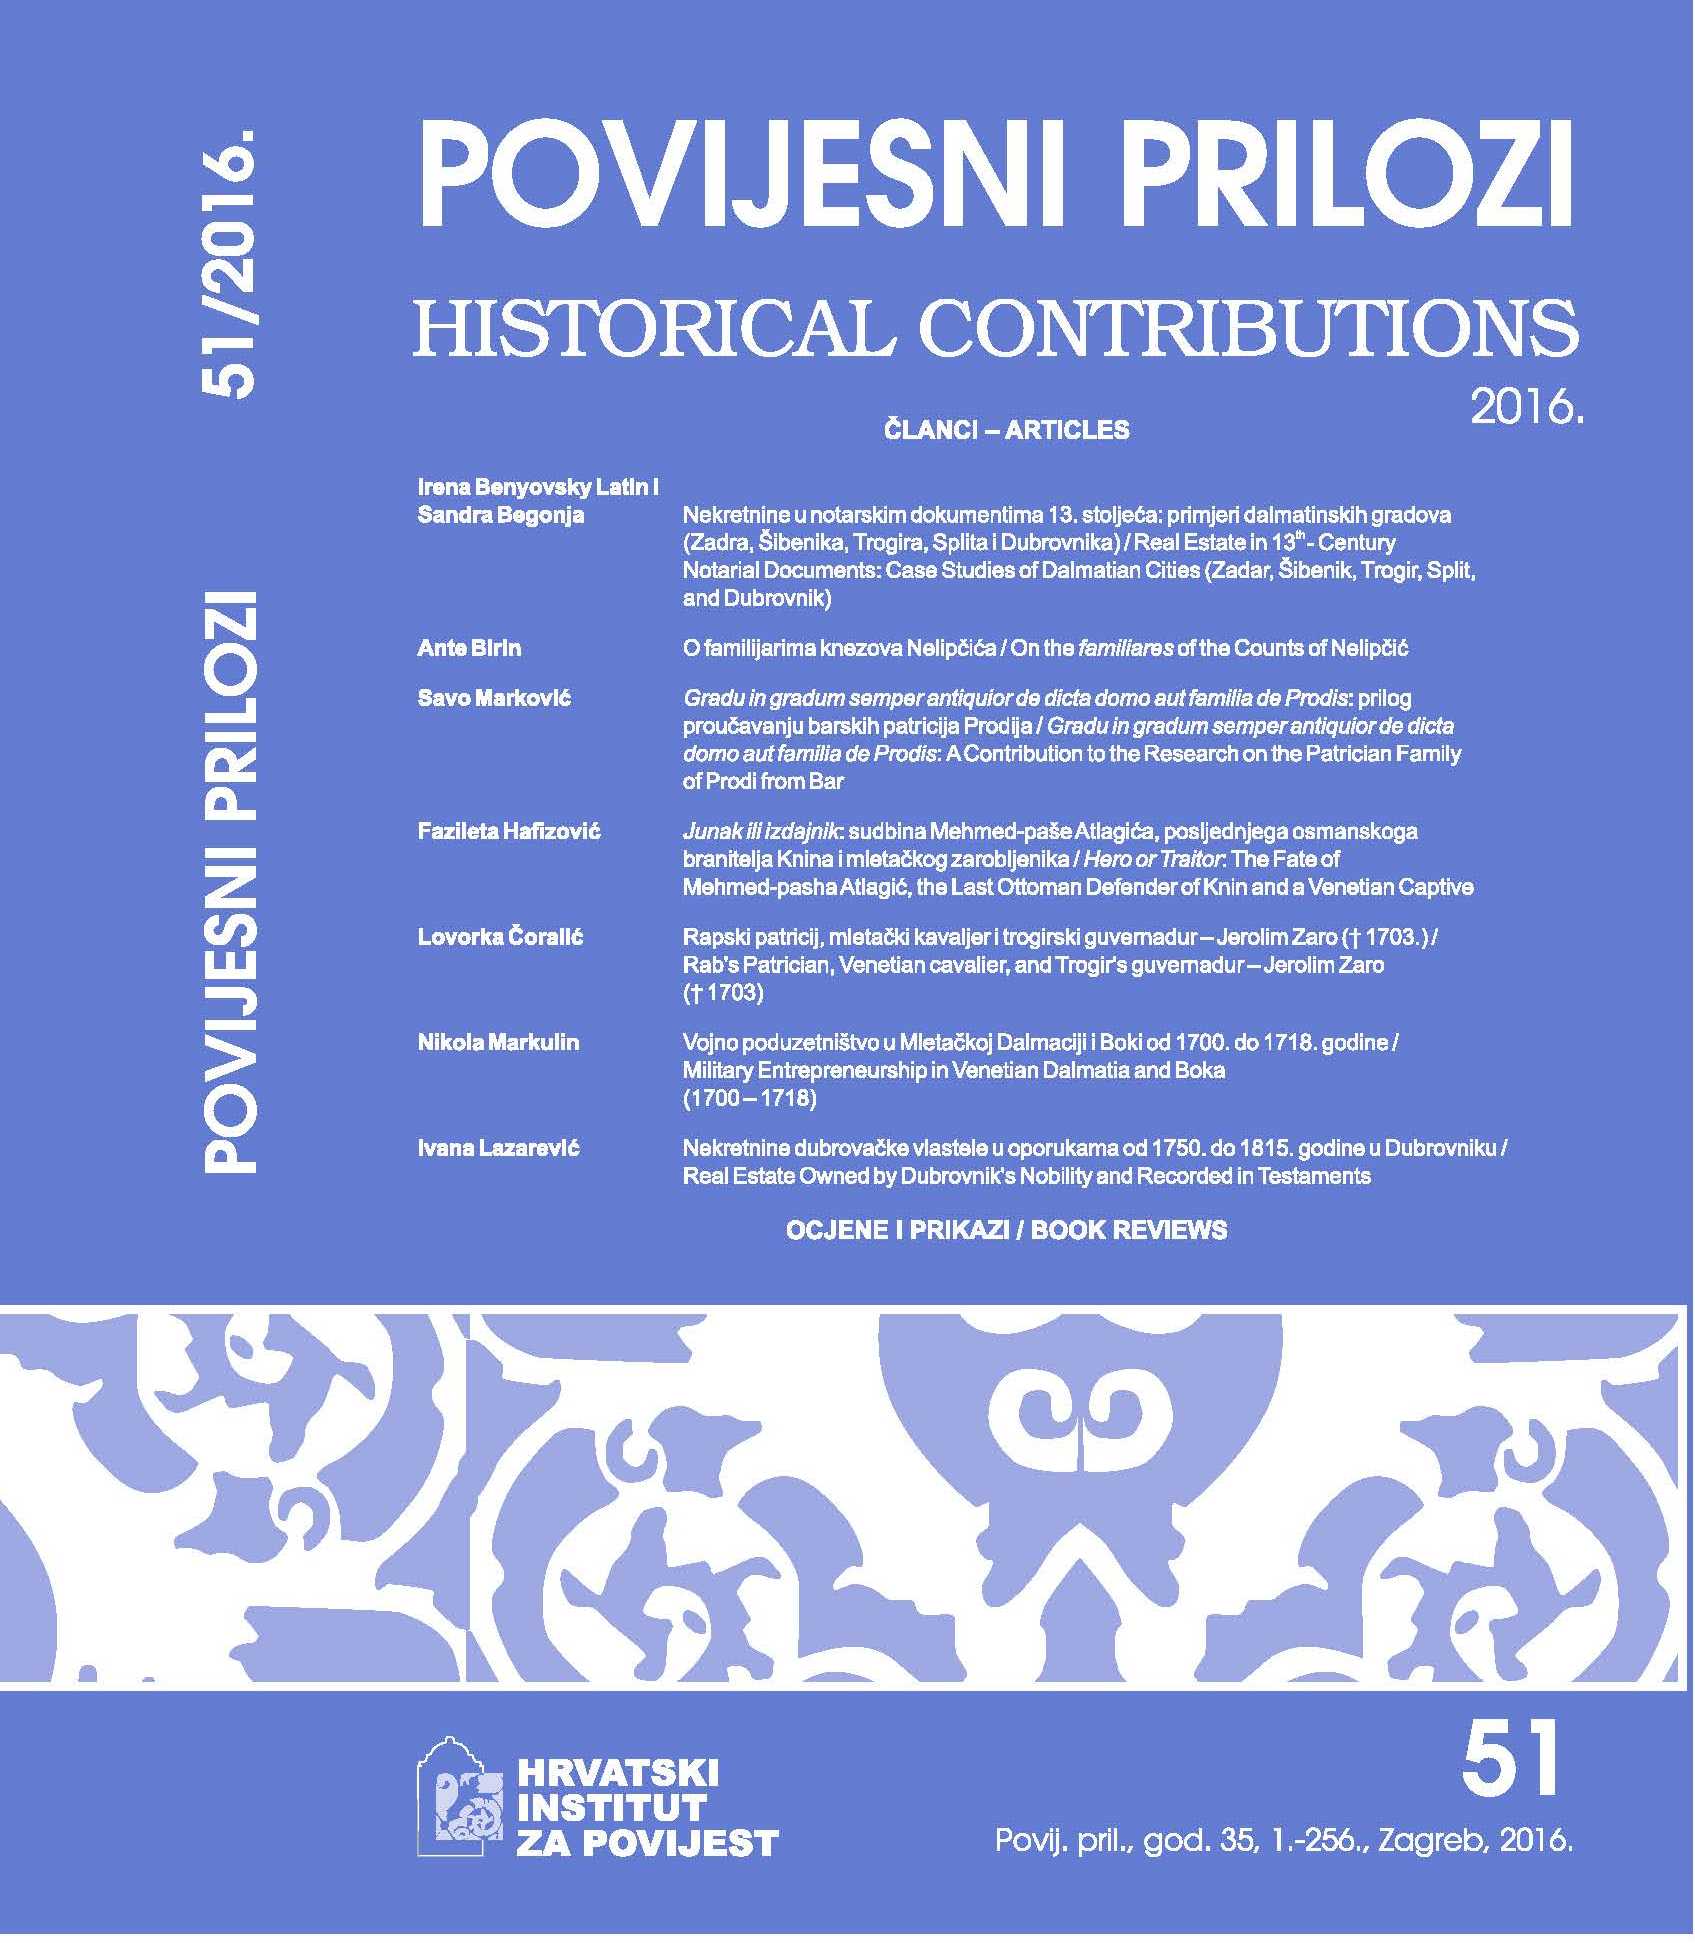 Croatica christiana periodica, XXXIX (2015), br. 75, 273 stranice; XXXIX (2015), br. 76, 238 pp. Cover Image